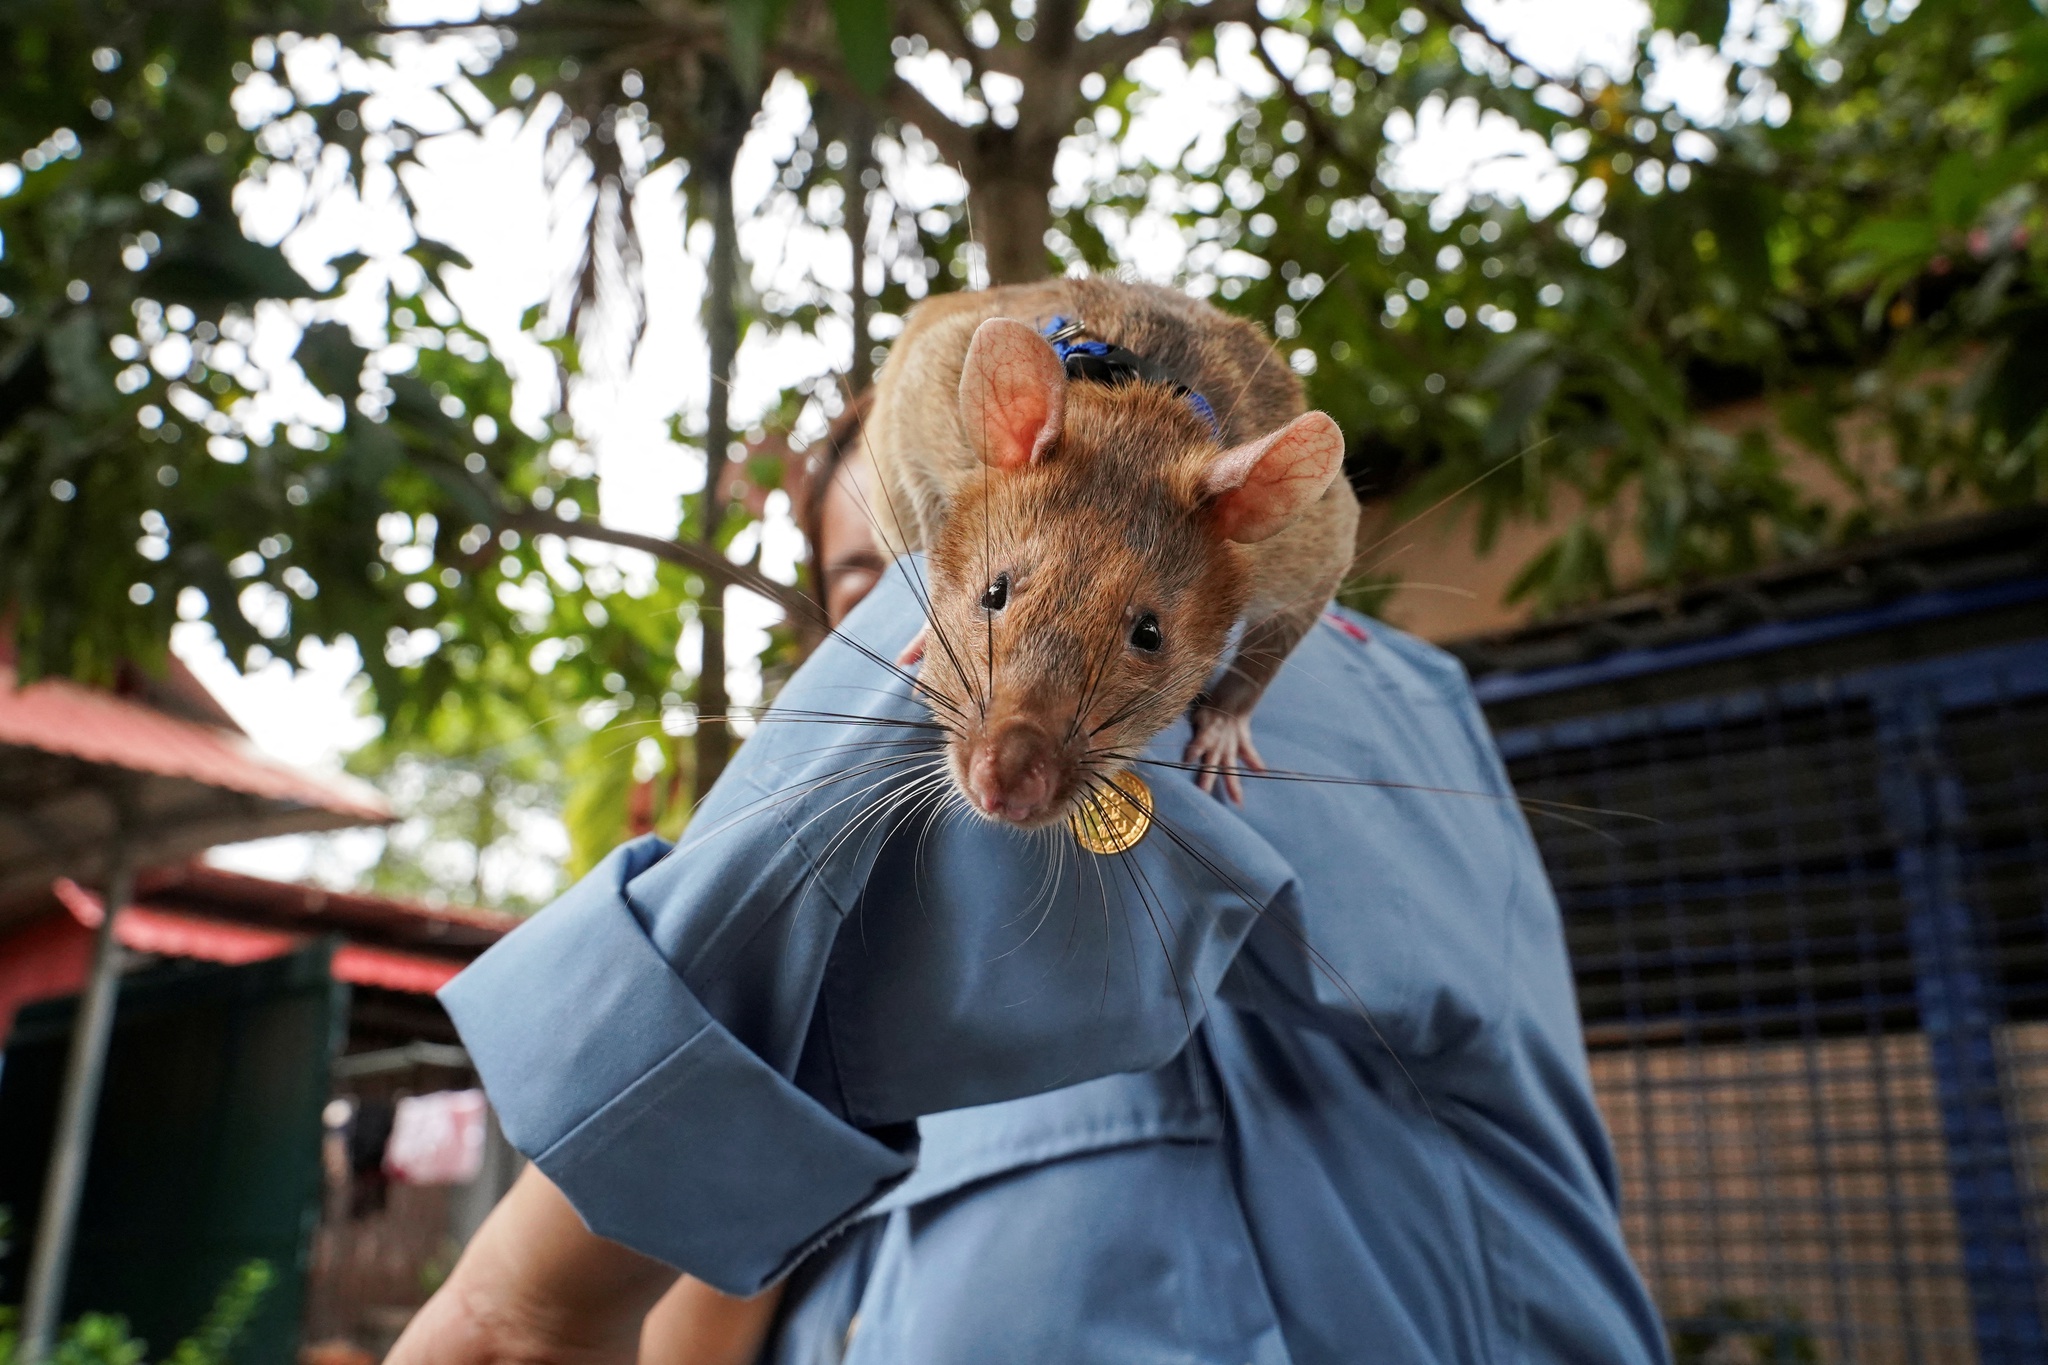 Magawa, o rato que detectava minas terrestres, morre de velhice